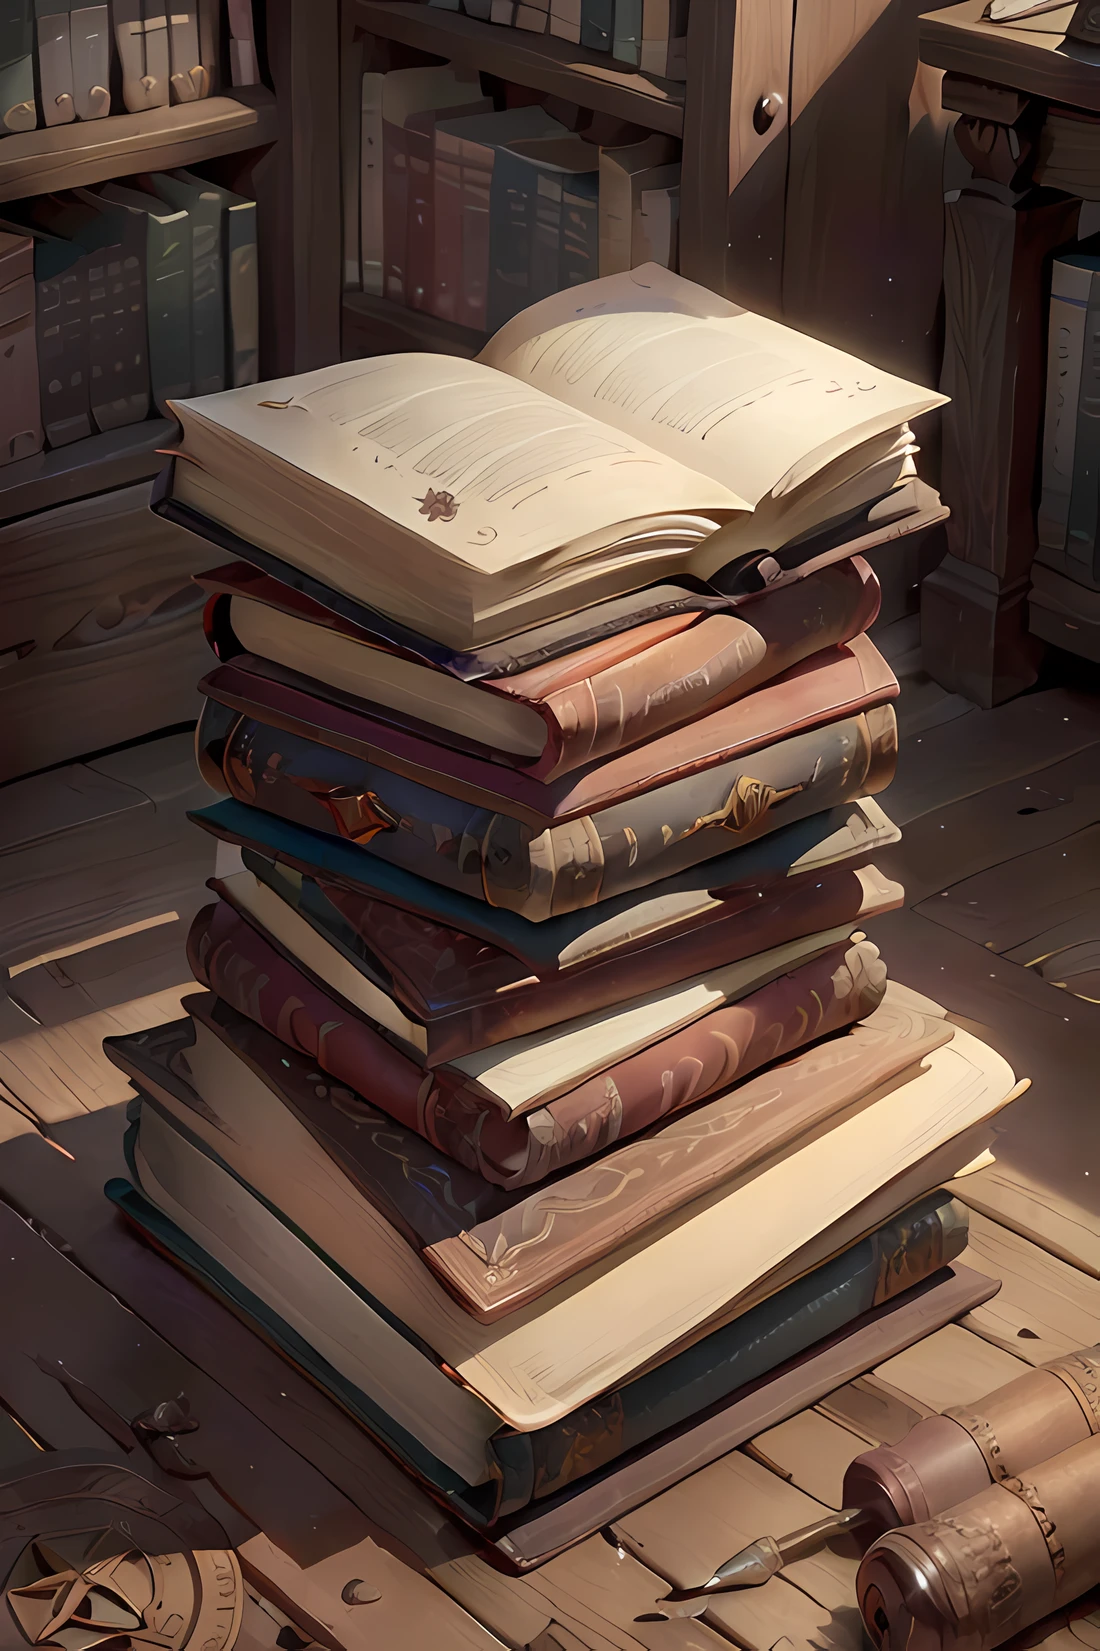 중앙에 받침대가 있는 오래된 도서관, 갈색 가죽 커버가 있는 오래된 책, 책에 쓰여진 상징, 마모레 바닥